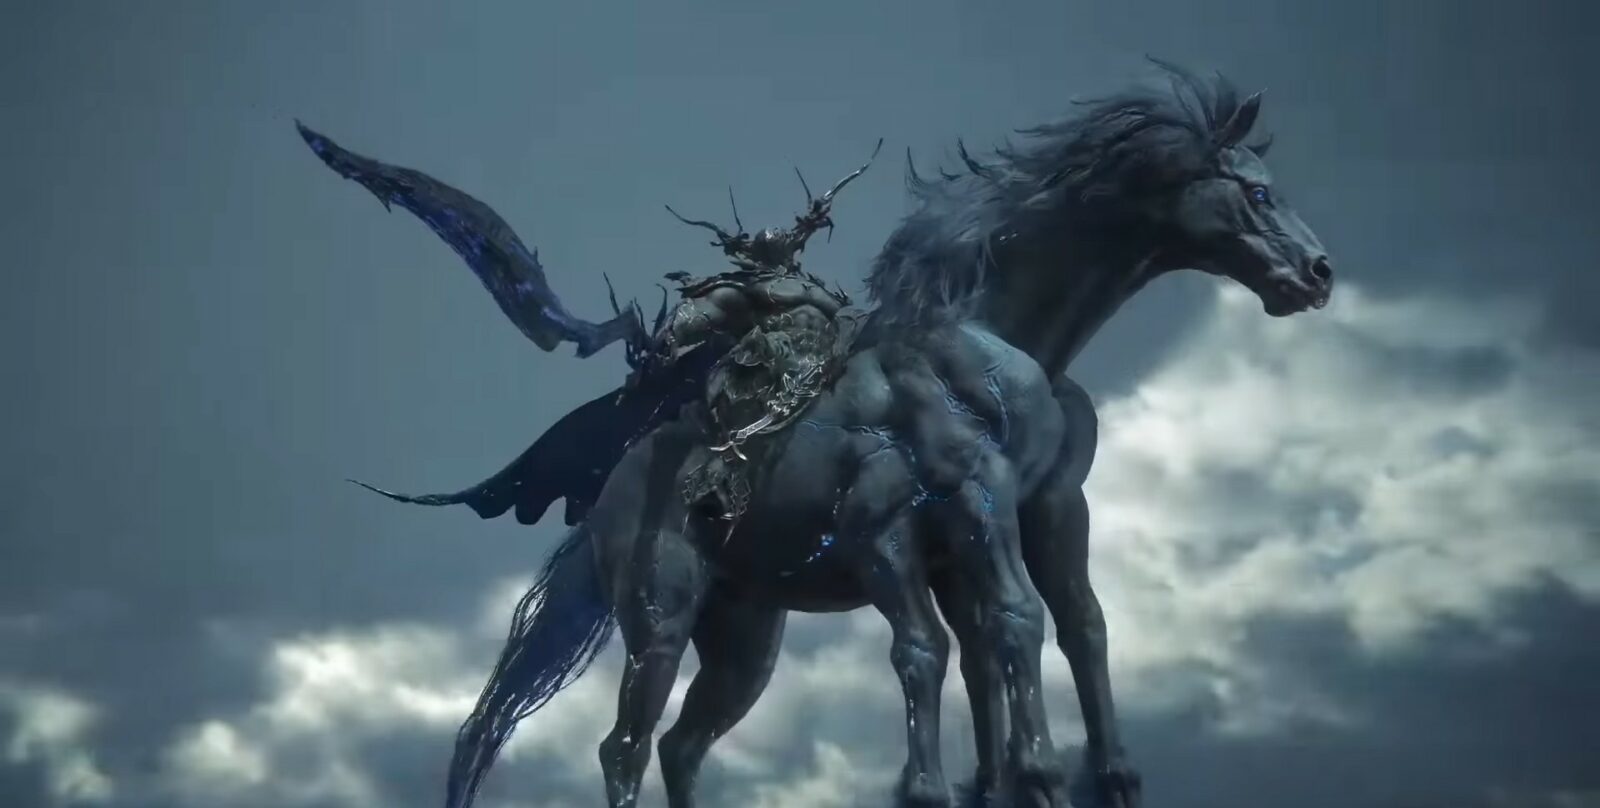 Barnabus Tharmr (Odin) Dominant in Final Fantasy 16